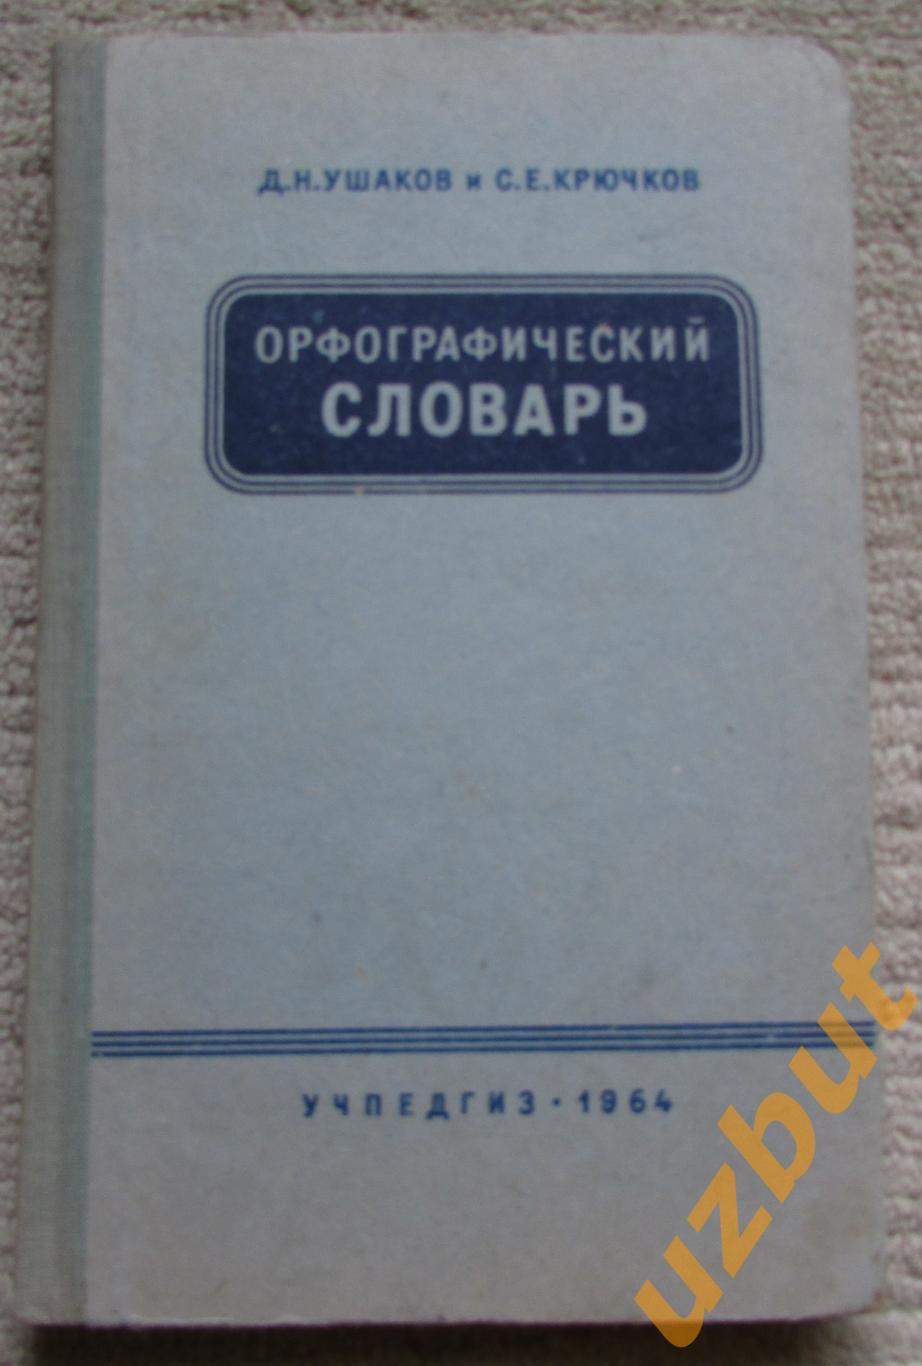 Орфографический словарь , Д. Н. Ушаков 1964